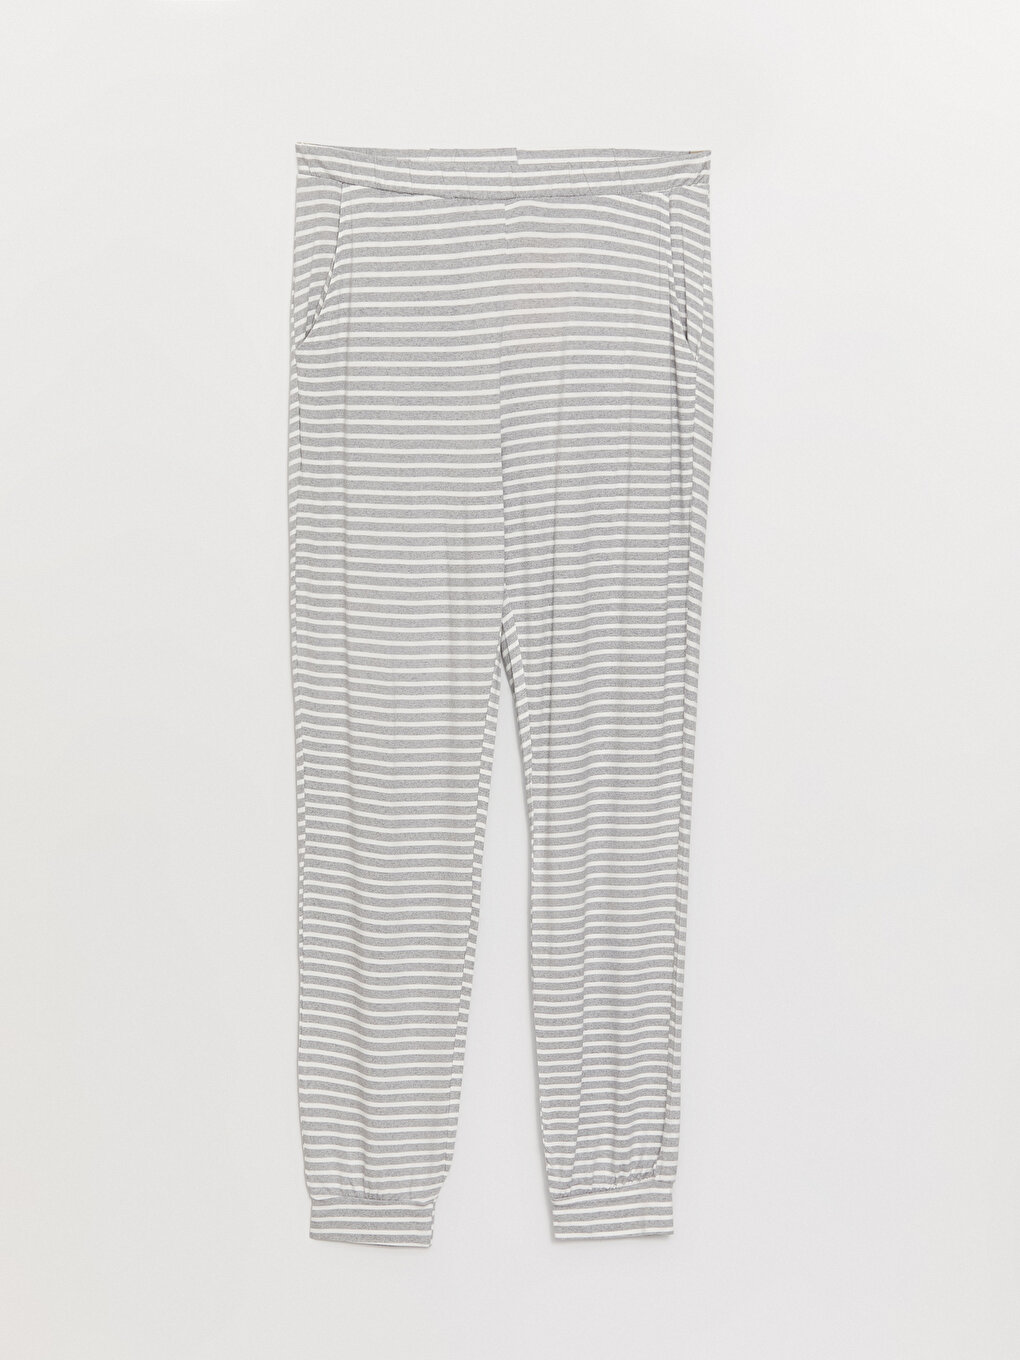 Striped Women's Jogger Pajama Bottoms with Elastic Waist -W3IV78Z8